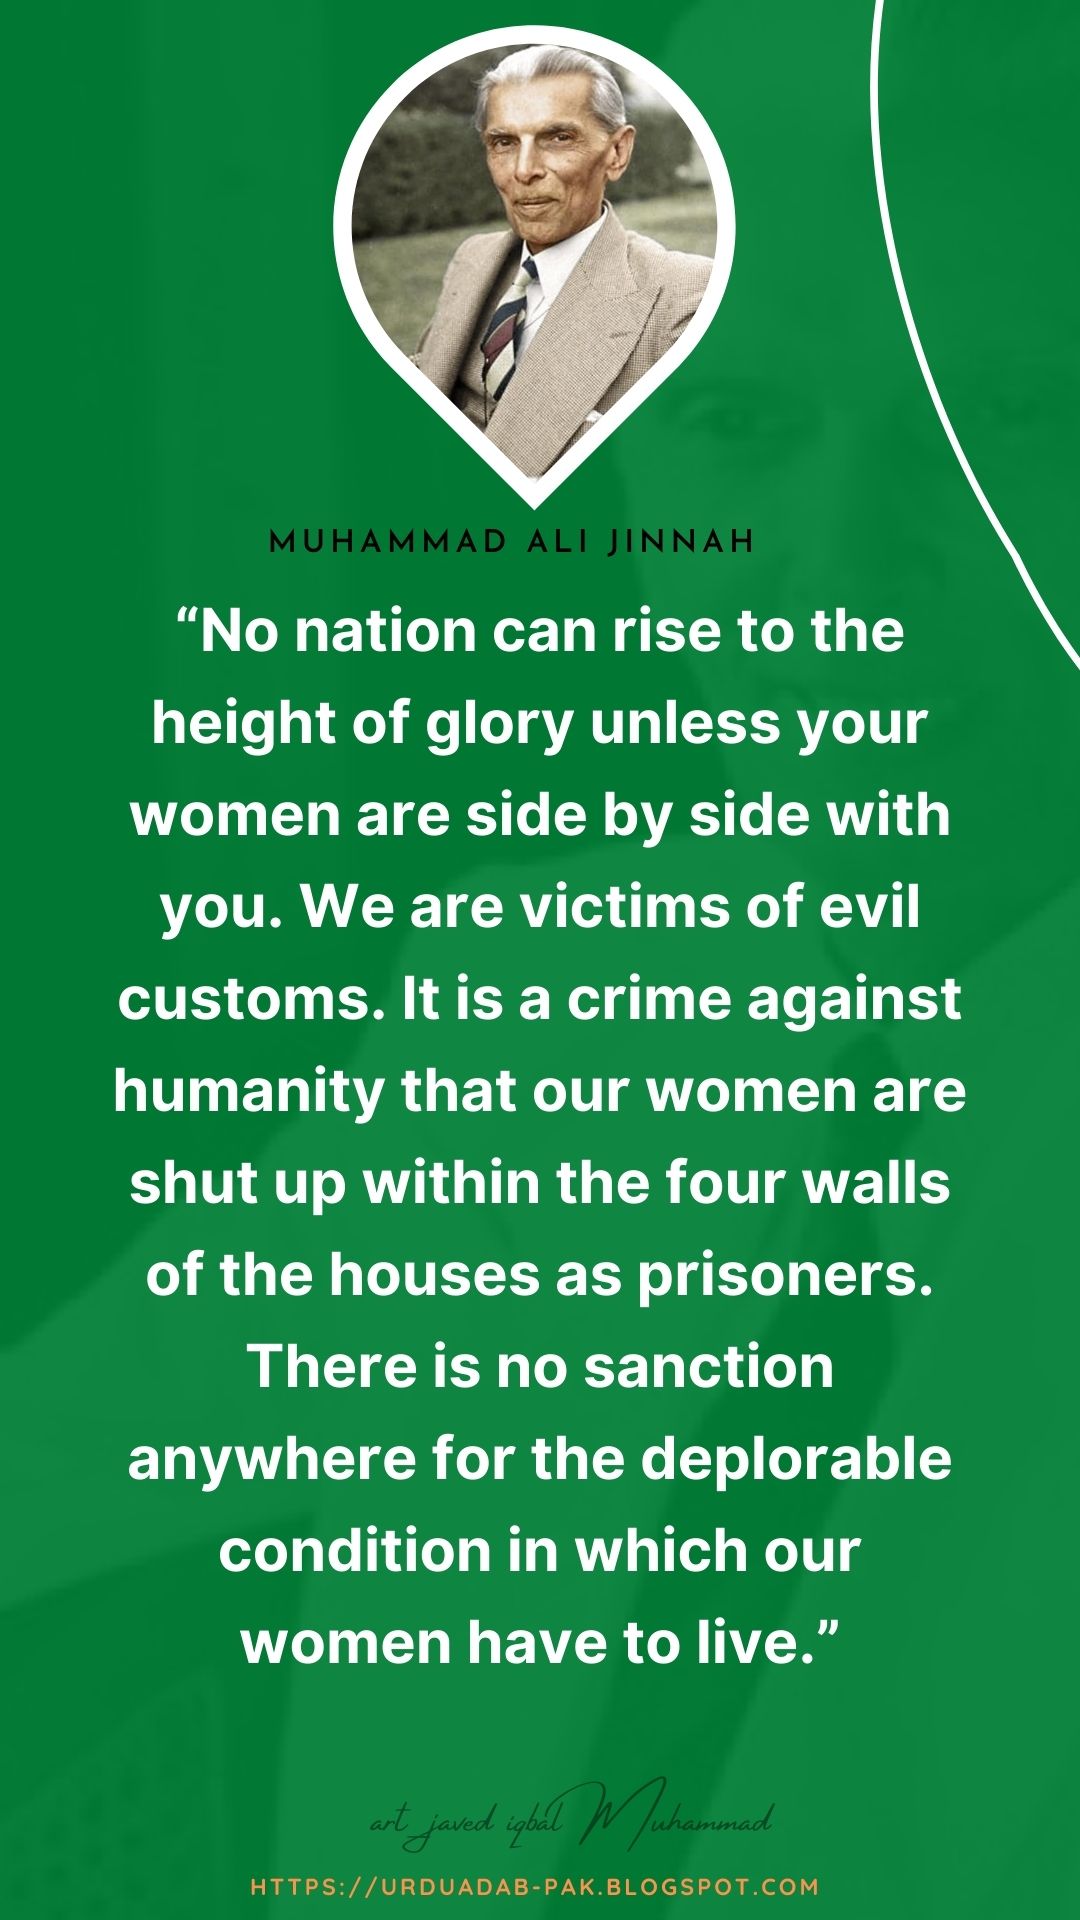 Best Muhammad Ali Jinnah Quotes | Quaid e Azam Muhammad Ali Jinnah Quotes | Muhammad Ali Jinnah WhatsApp status